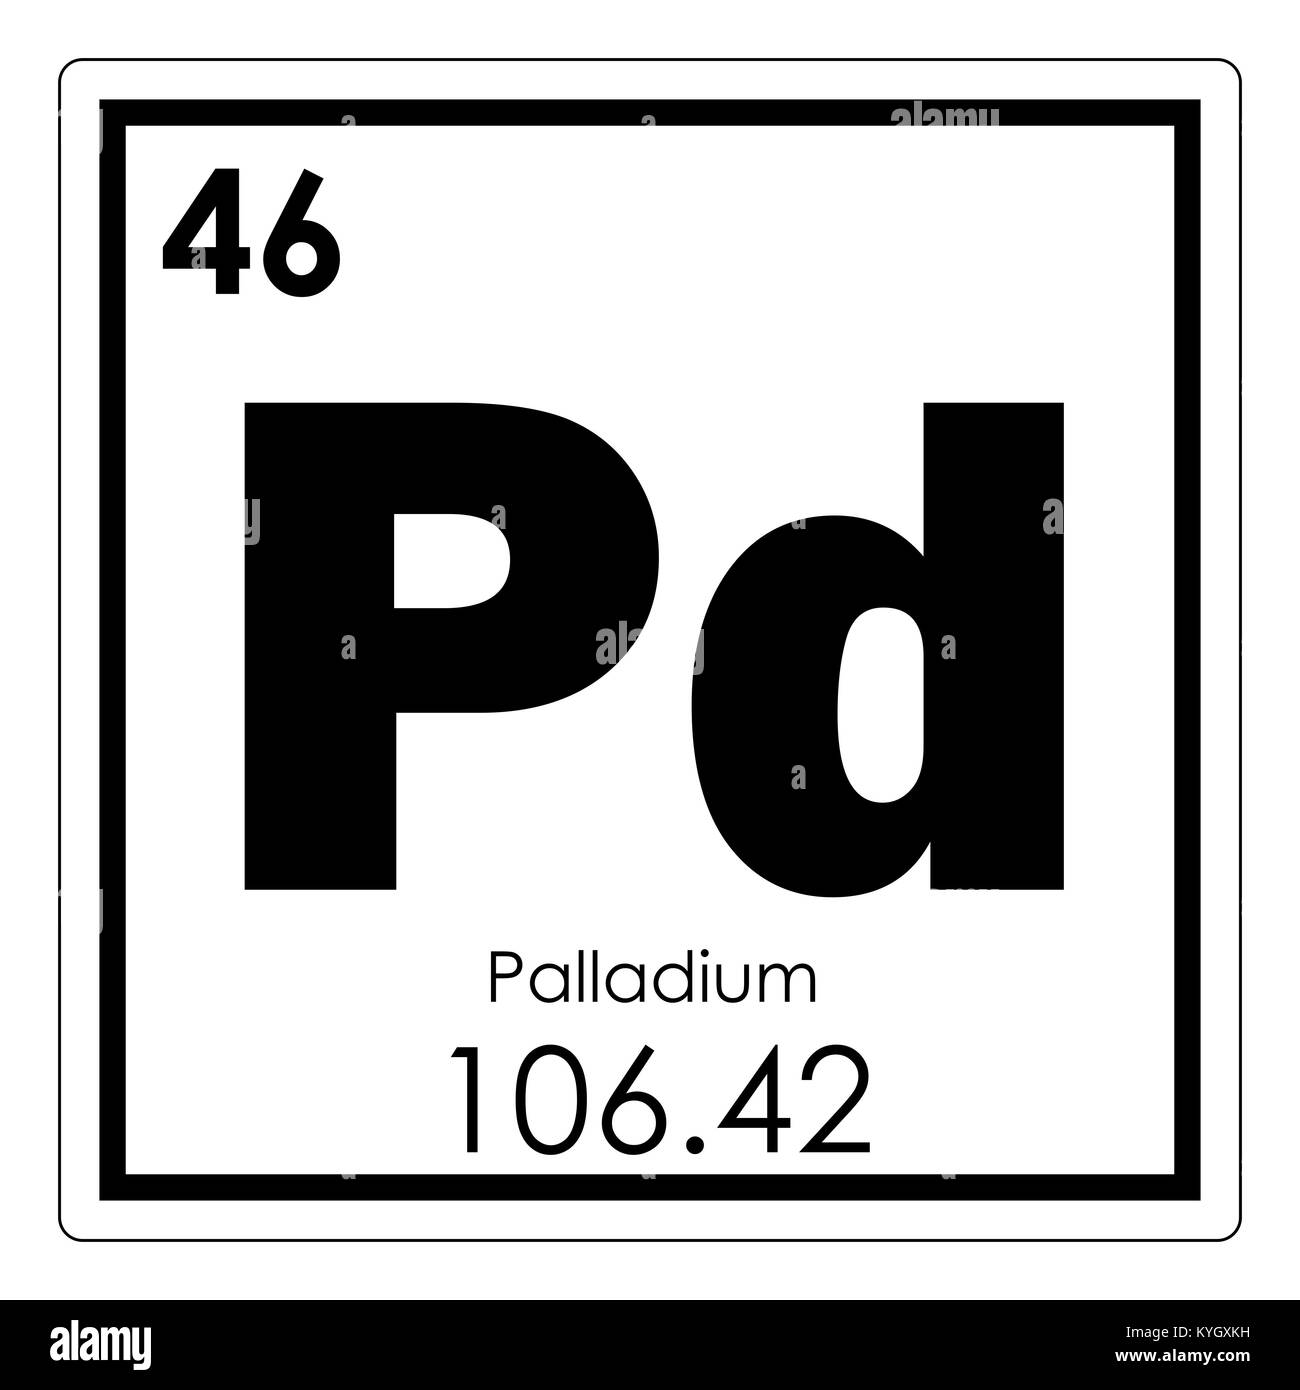 Palladium chemische Element Periodensystem Wissenschaft Symbol  Stockfotografie - Alamy